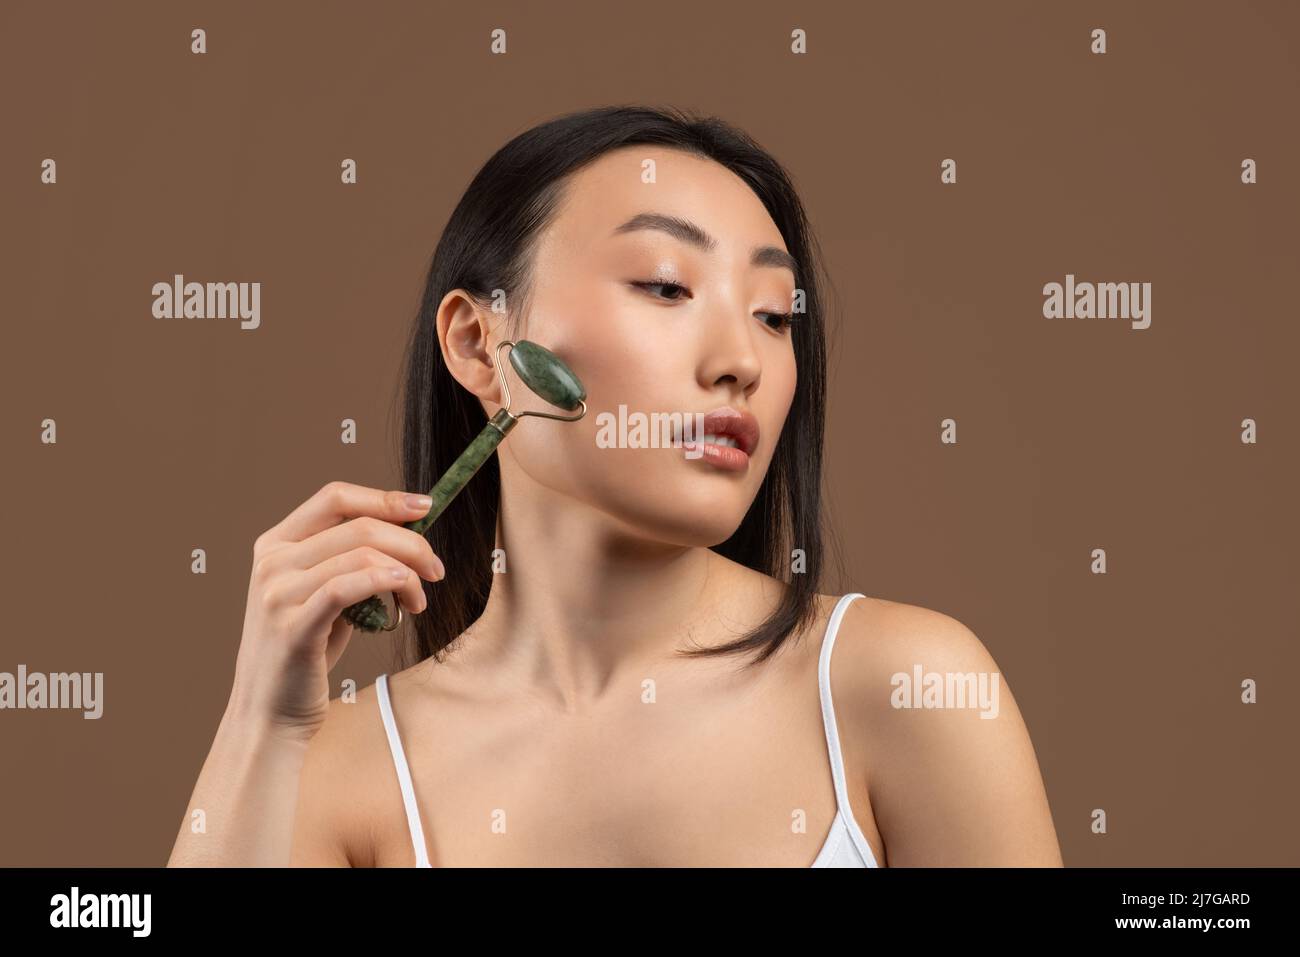 Junge asiatische Dame mit Greenstone Jade Gesichtswalze, Blick zur Seite, während posiert über braunen Studio Hintergrund Stockfoto